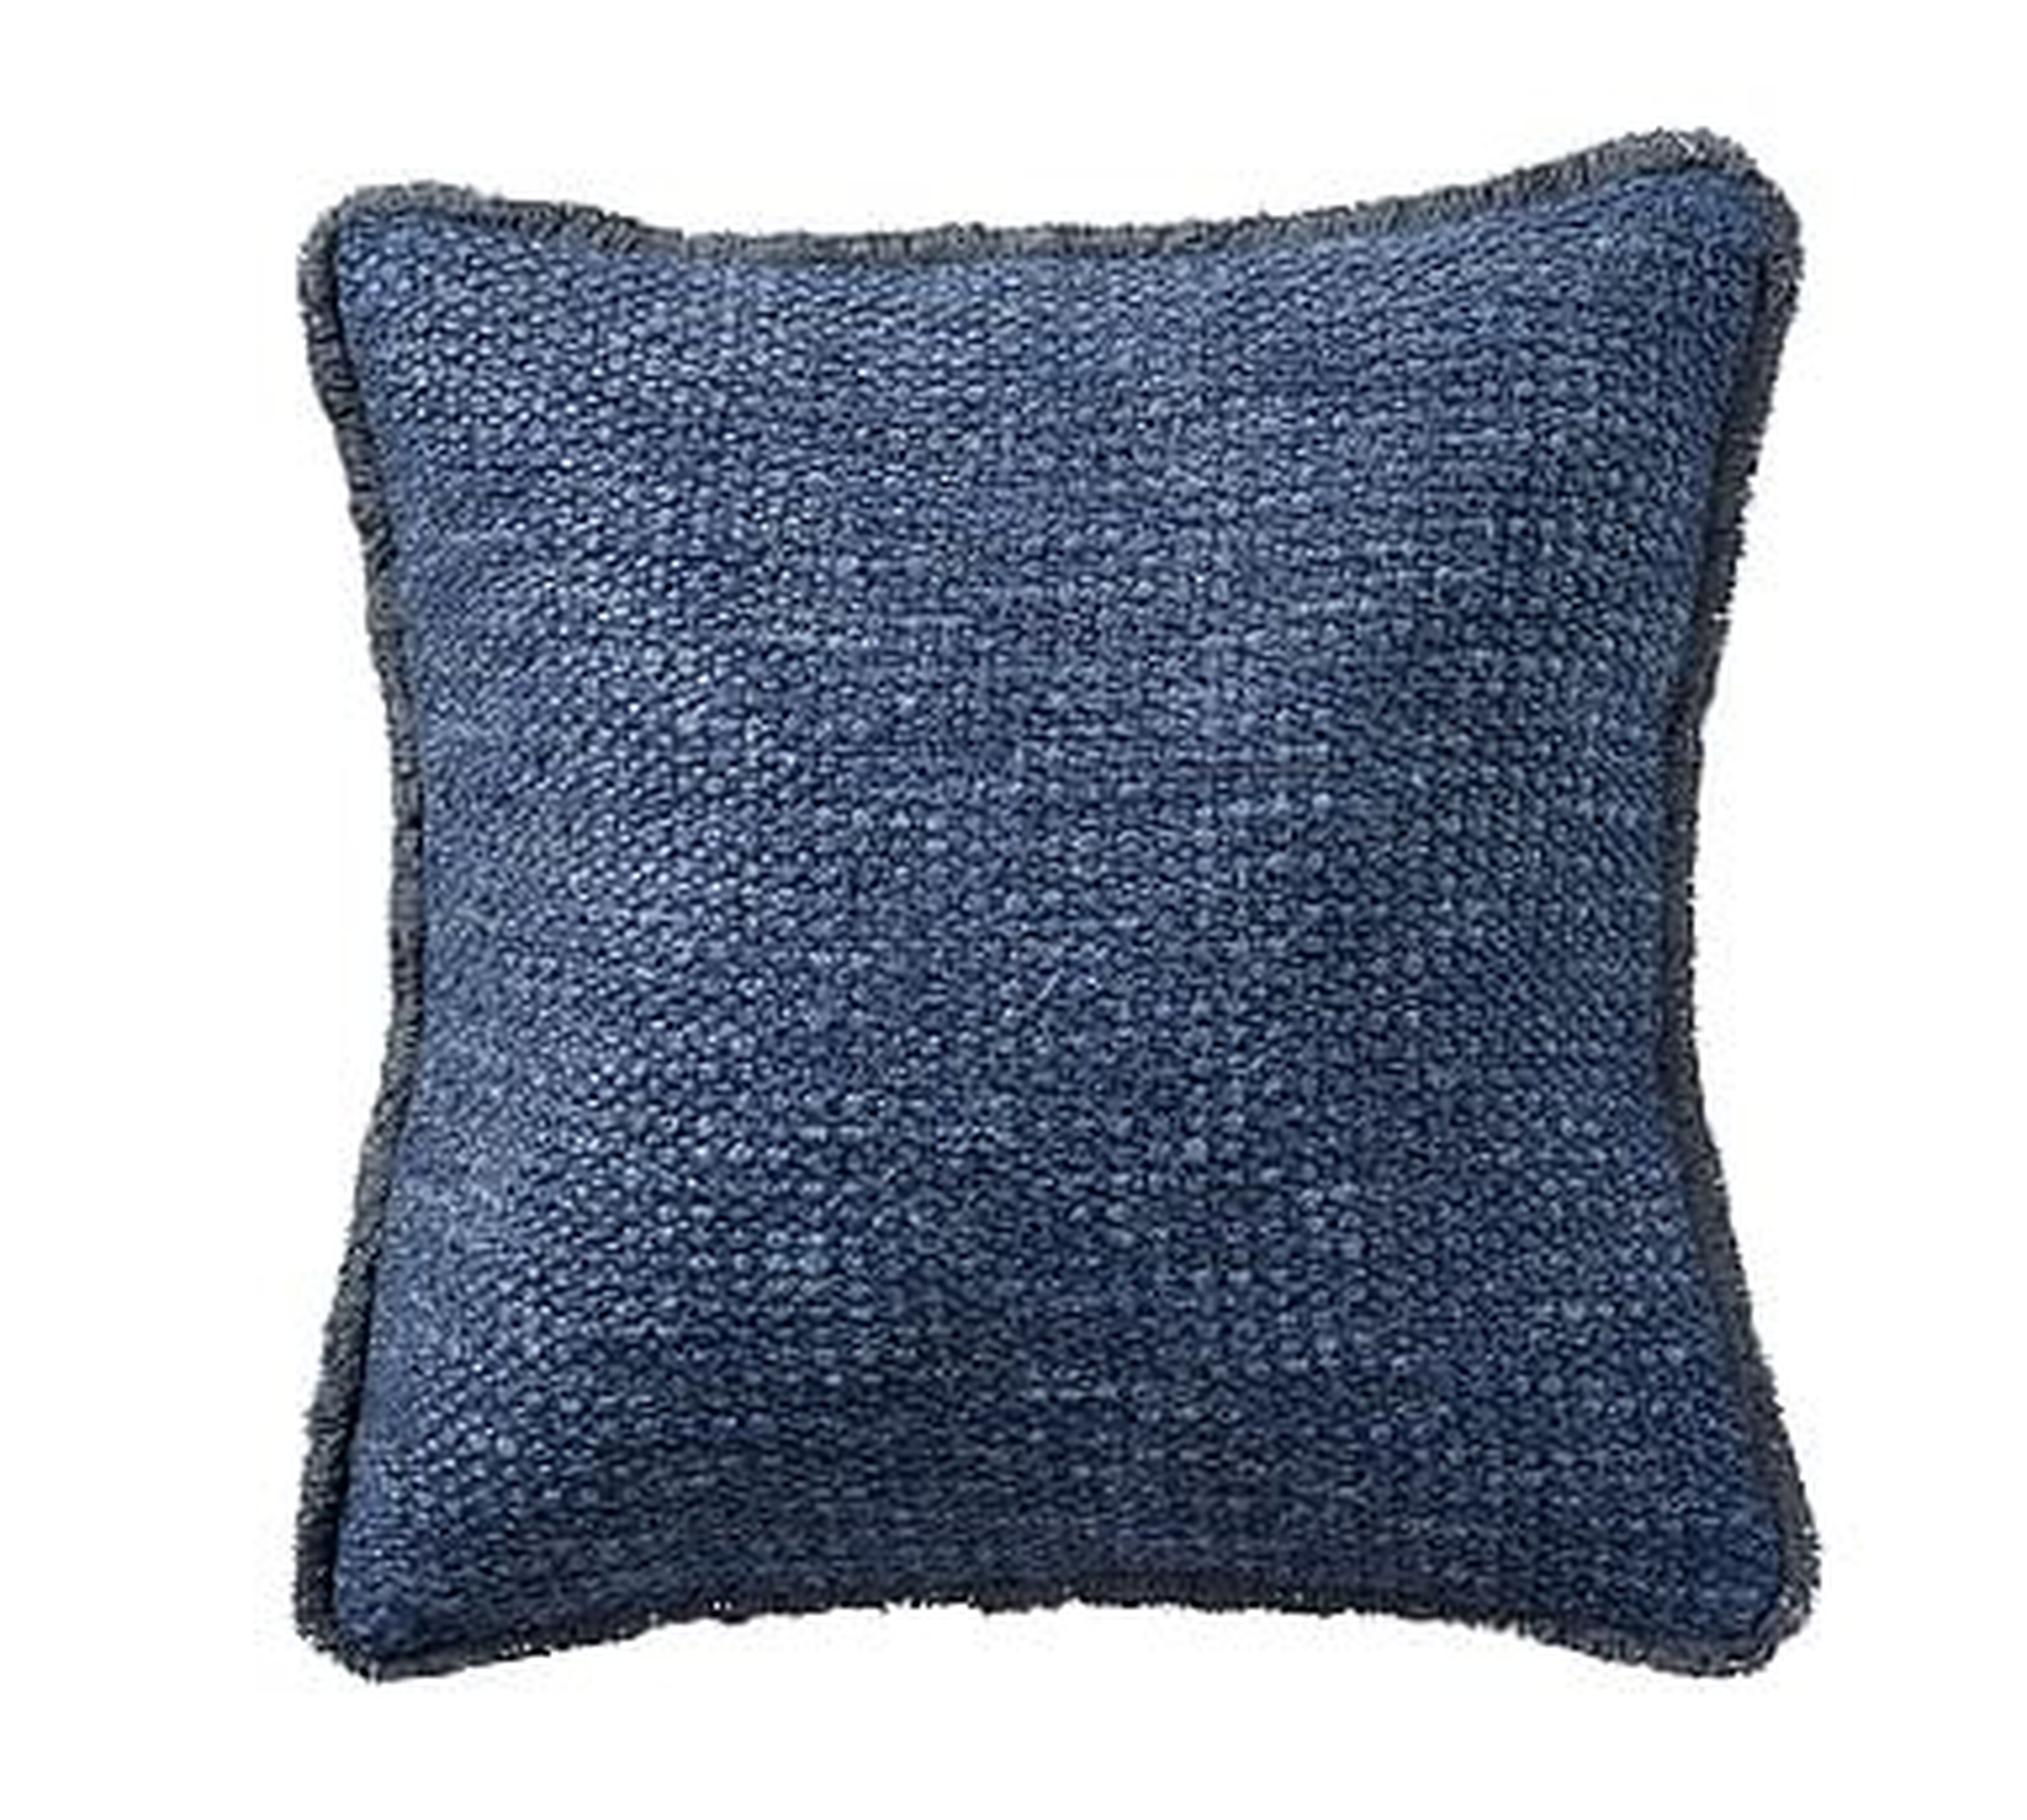 Duskin Textured Pillow, 20", Midnight - Pottery Barn